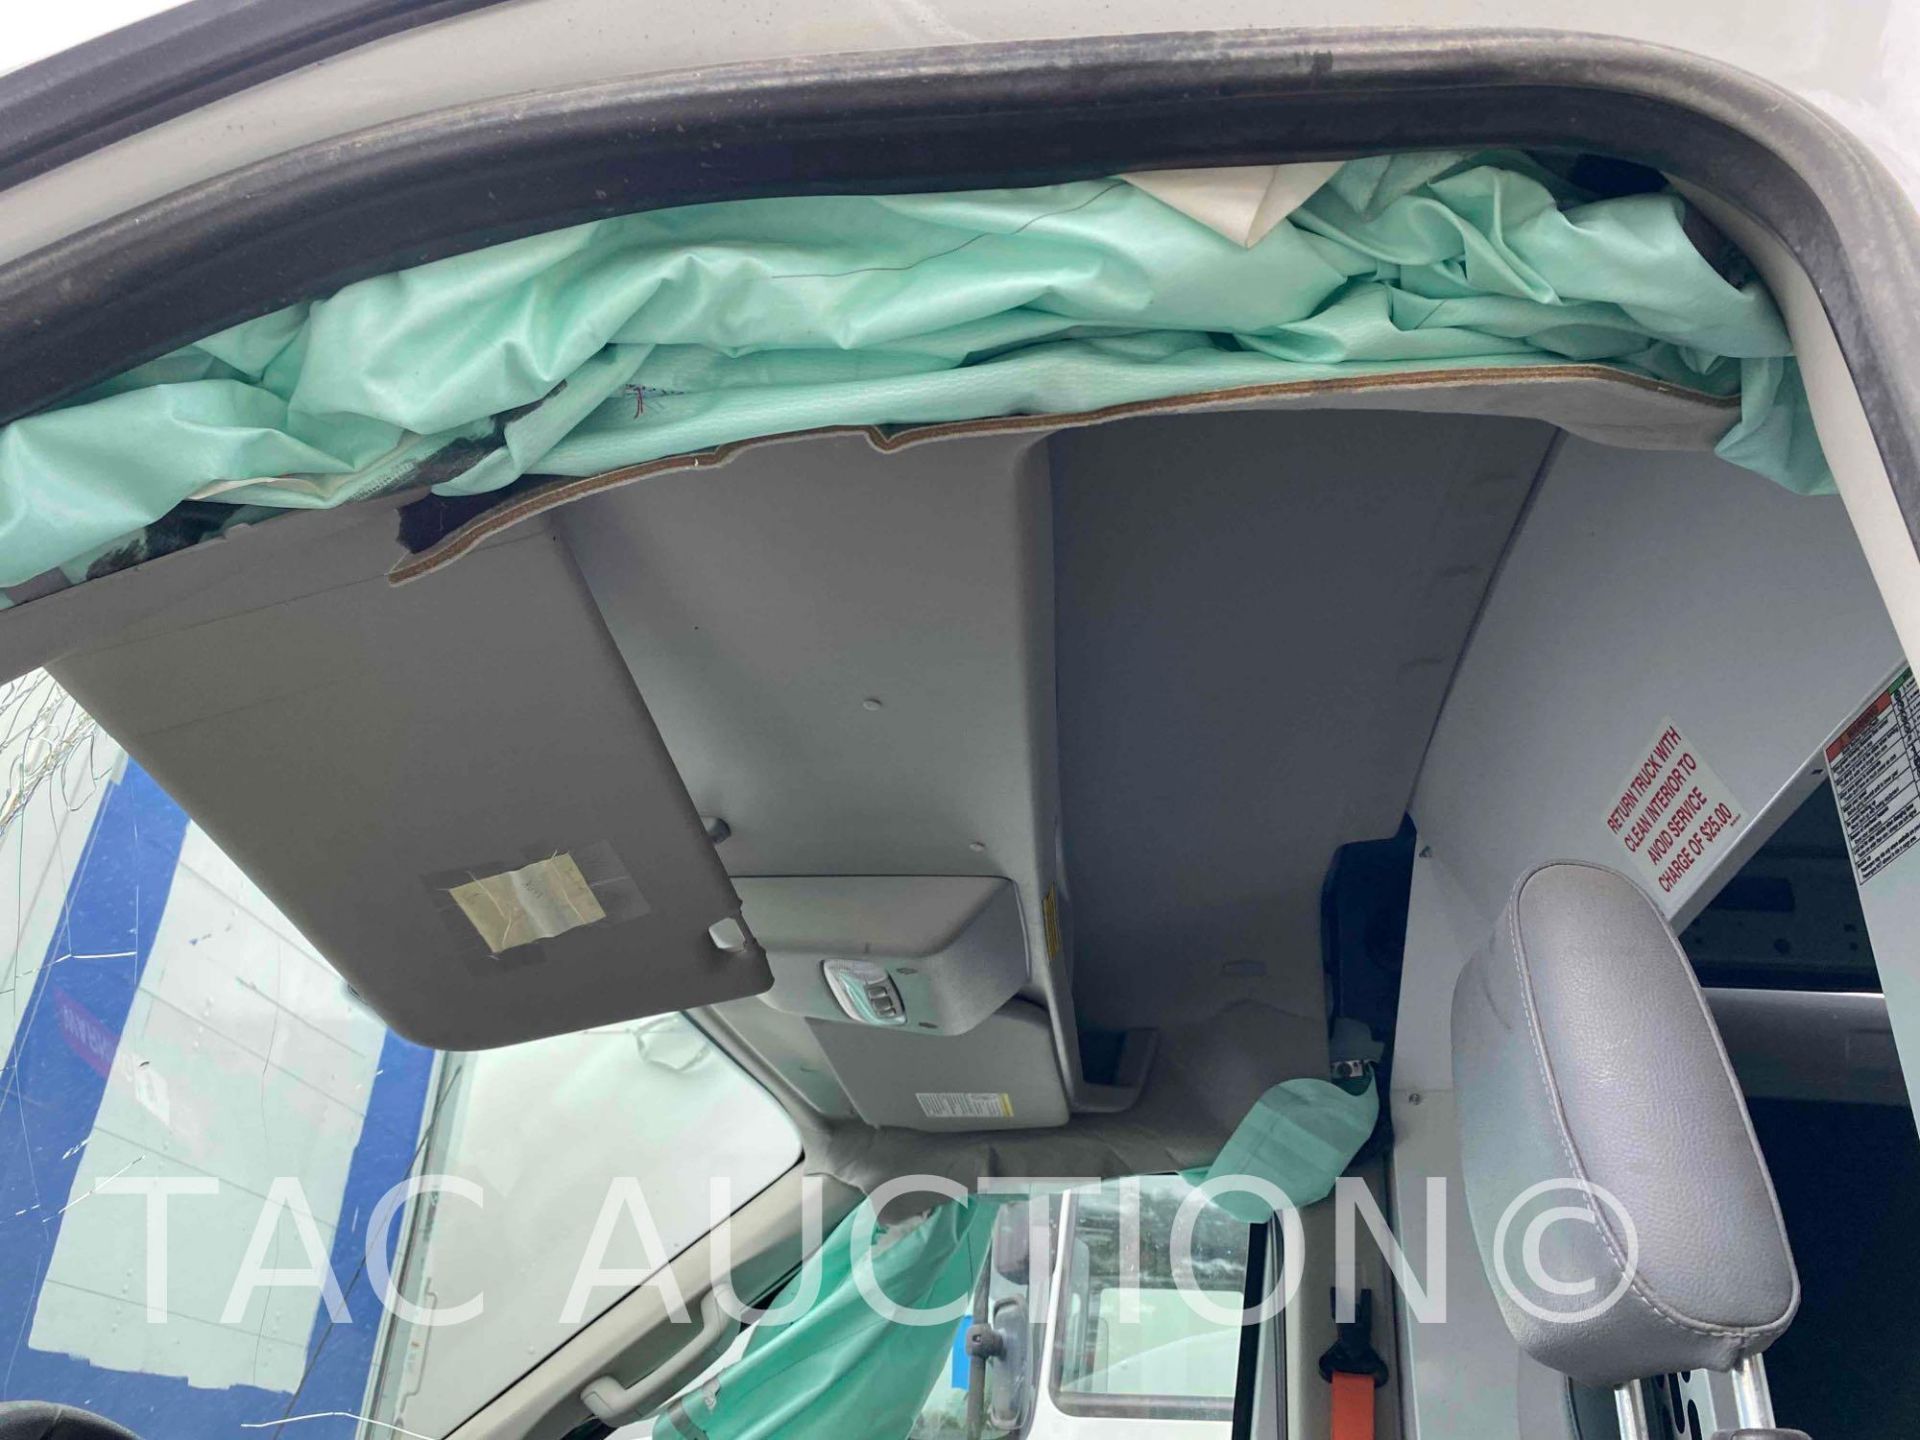 2019 Ford Transit 150 Cargo Van - Image 13 of 36